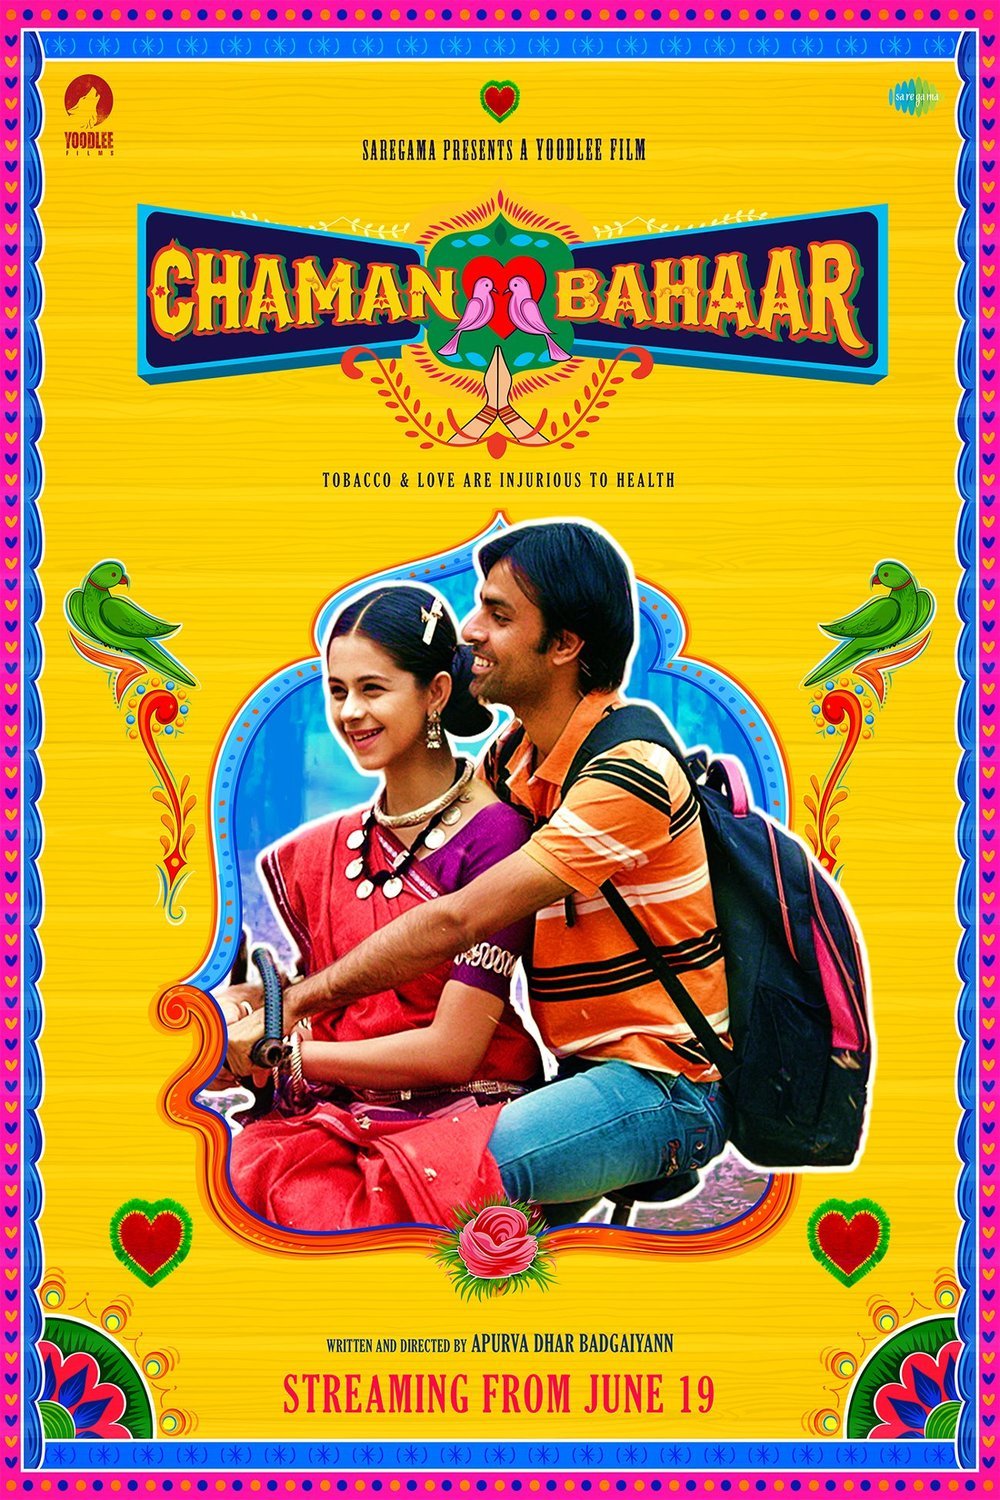 L'affiche originale du film Chaman Bahaar en Hindi